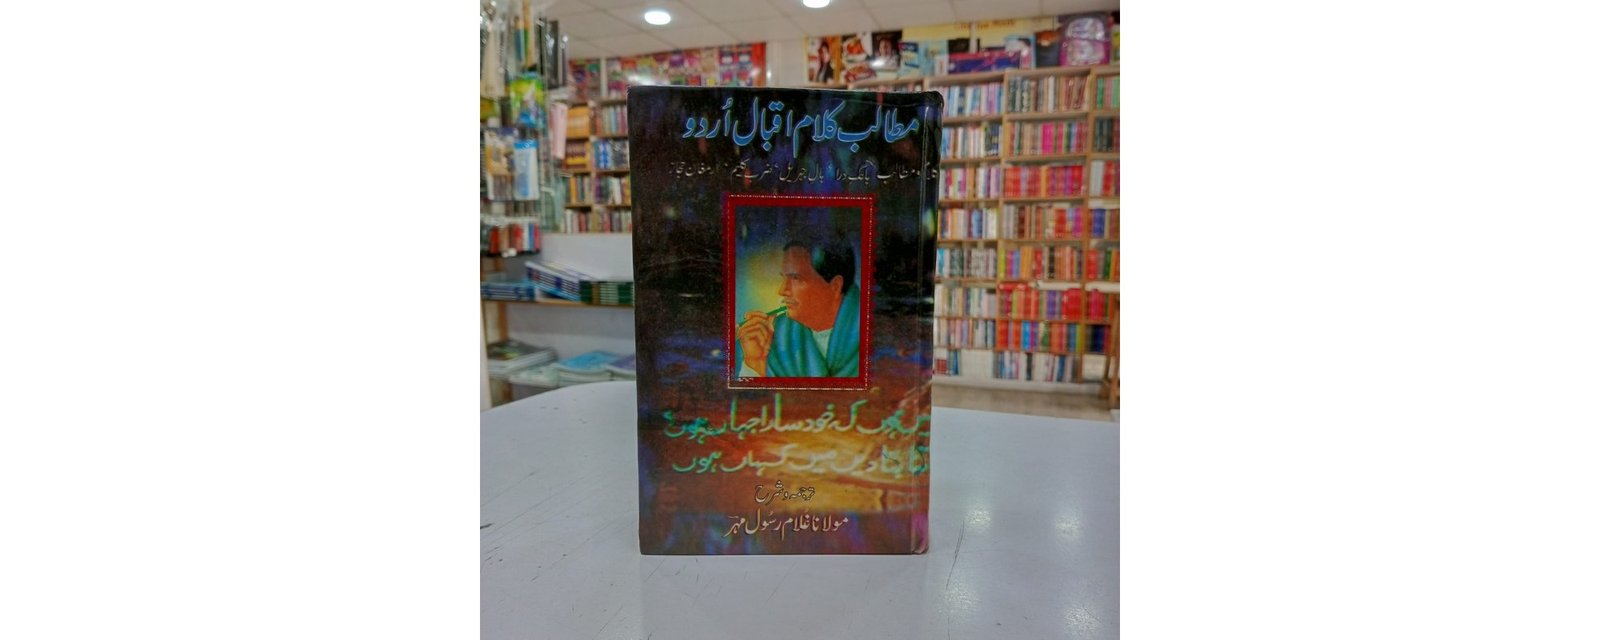 Books of Allama Iqbal